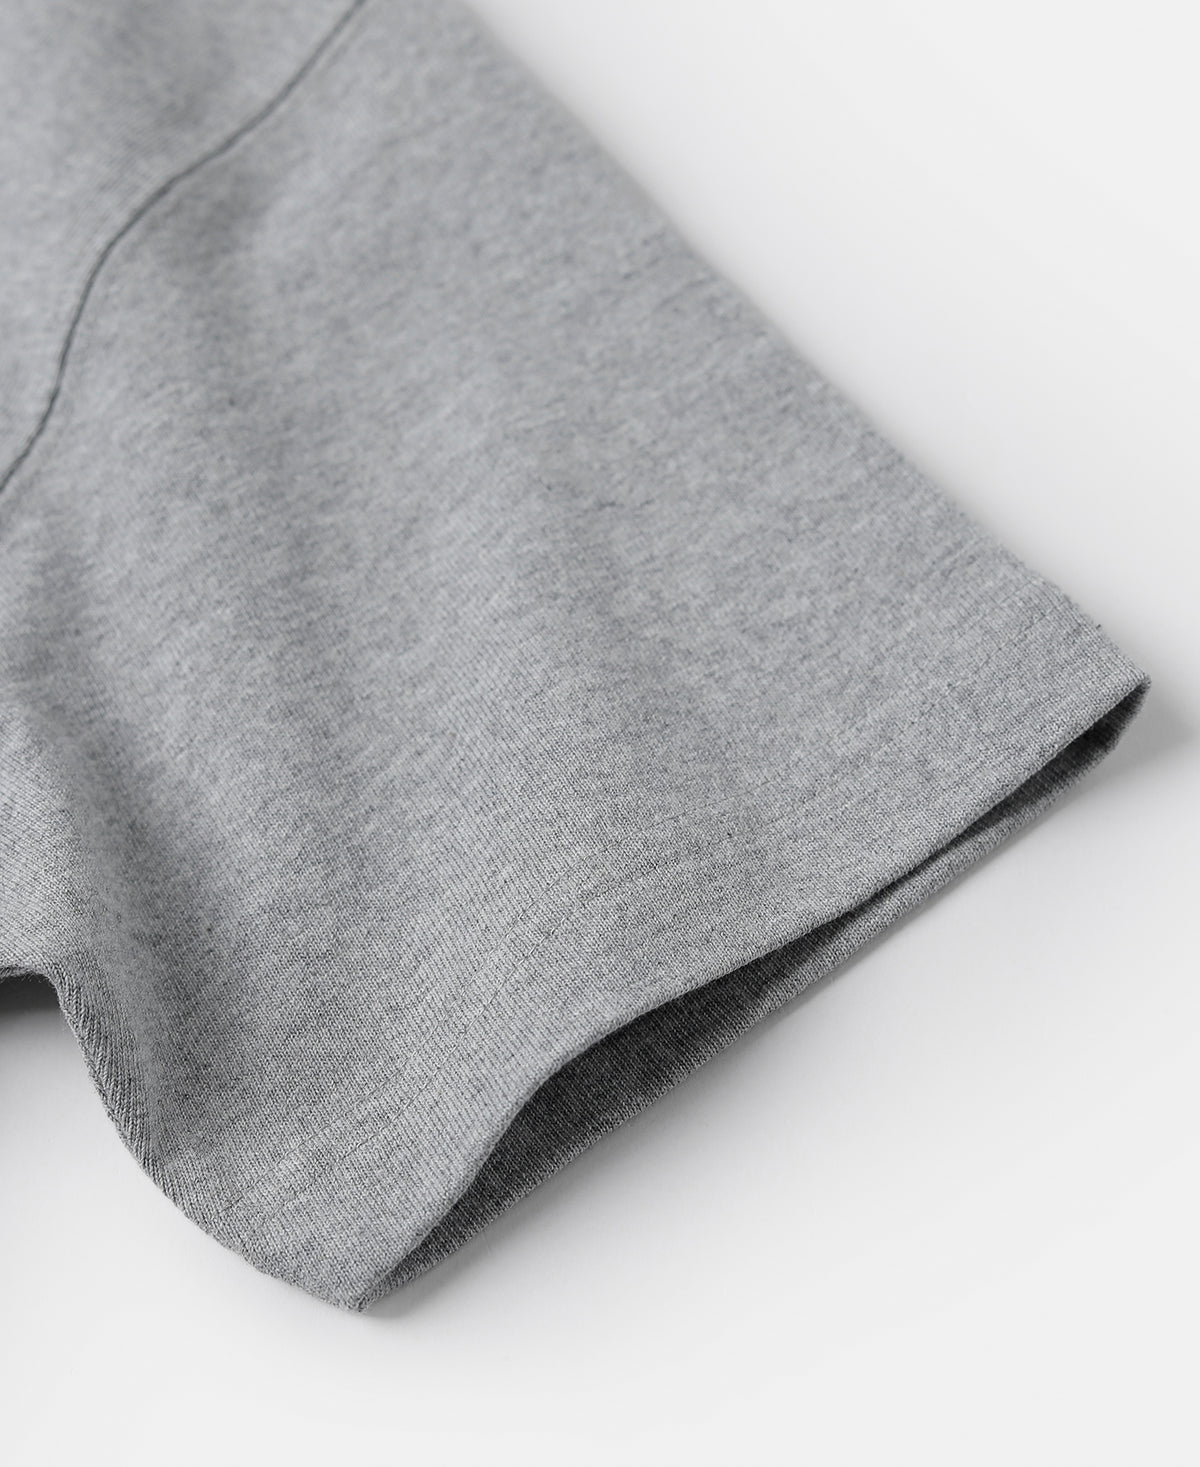 9 oz US Cotton Tubular T-Shirt - Gray